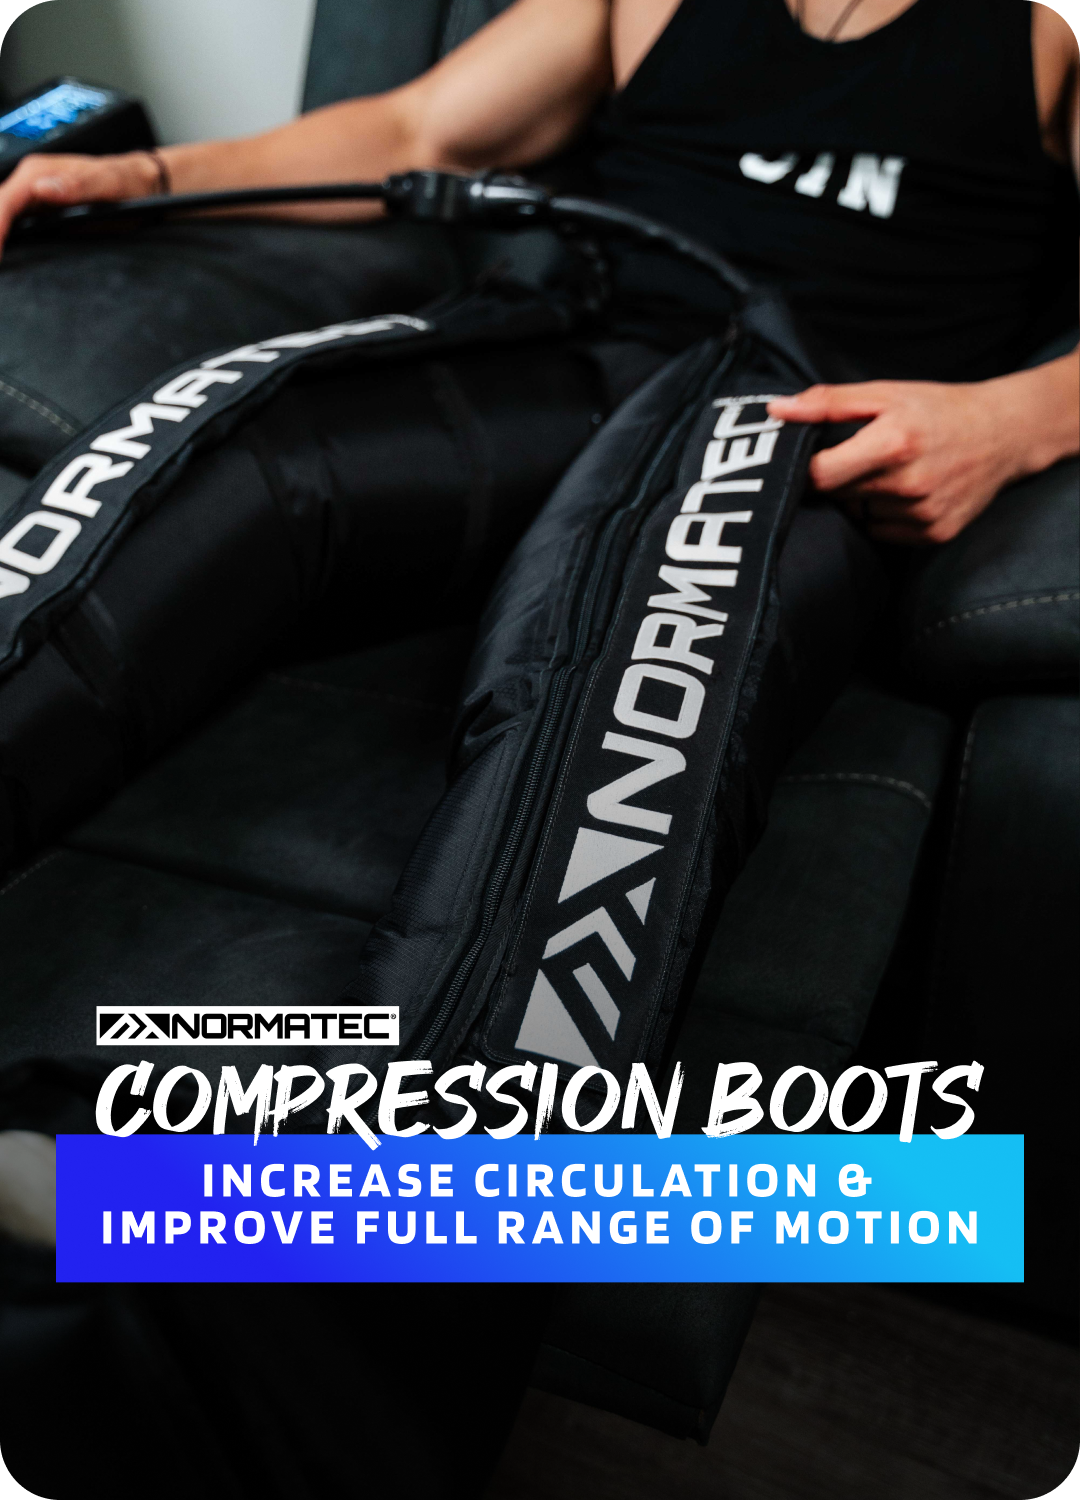 Normatec Compression Boots